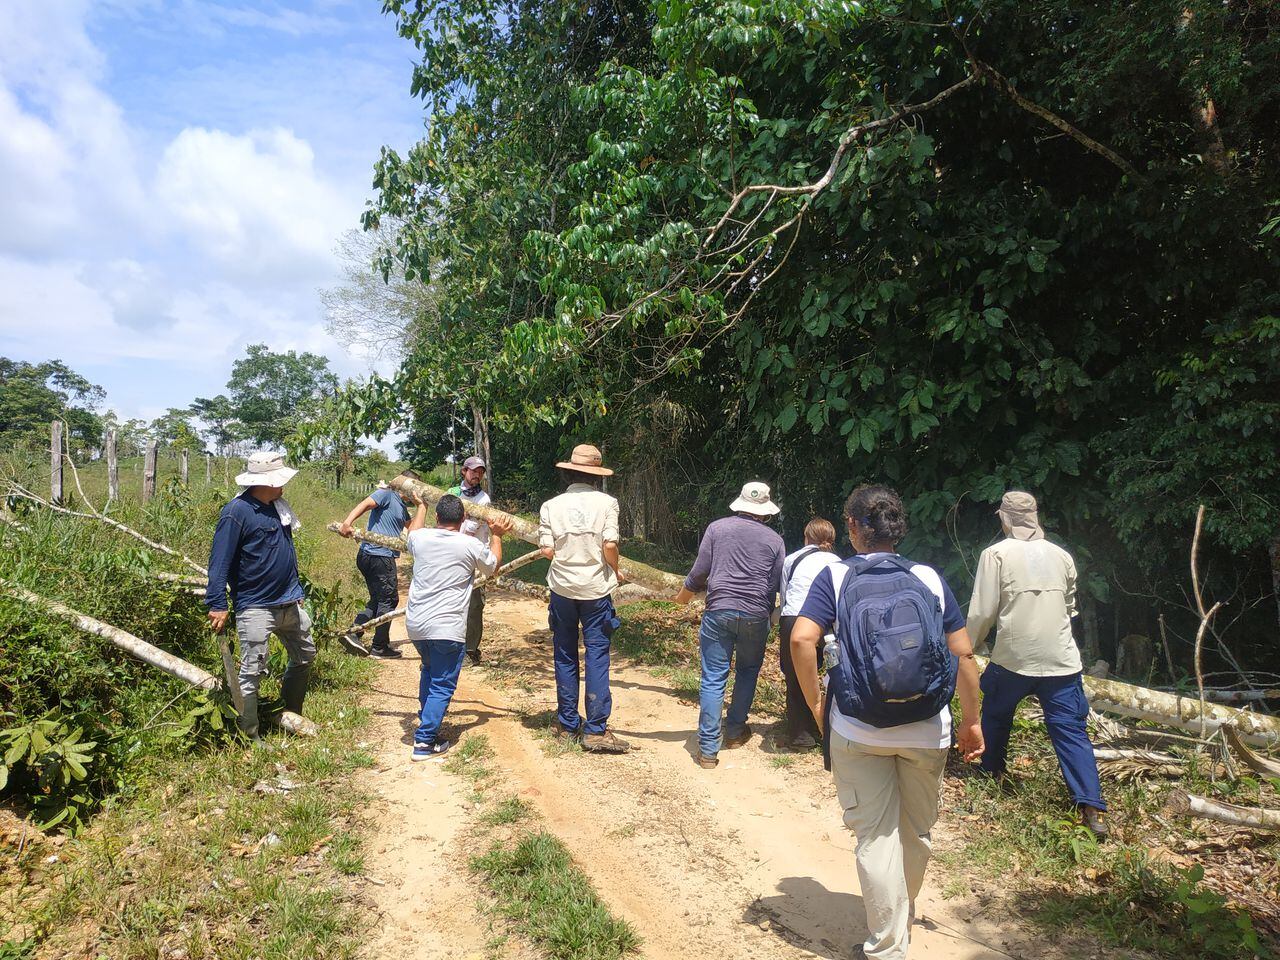 Más de 500 familias campesinas de los departamentos de Caquetá y Guaviare buscan vivir de los bosques a través del programa de forestería comunitaria de la Fundación para la Conservación y Desarrollo Sostenible (FCDS).